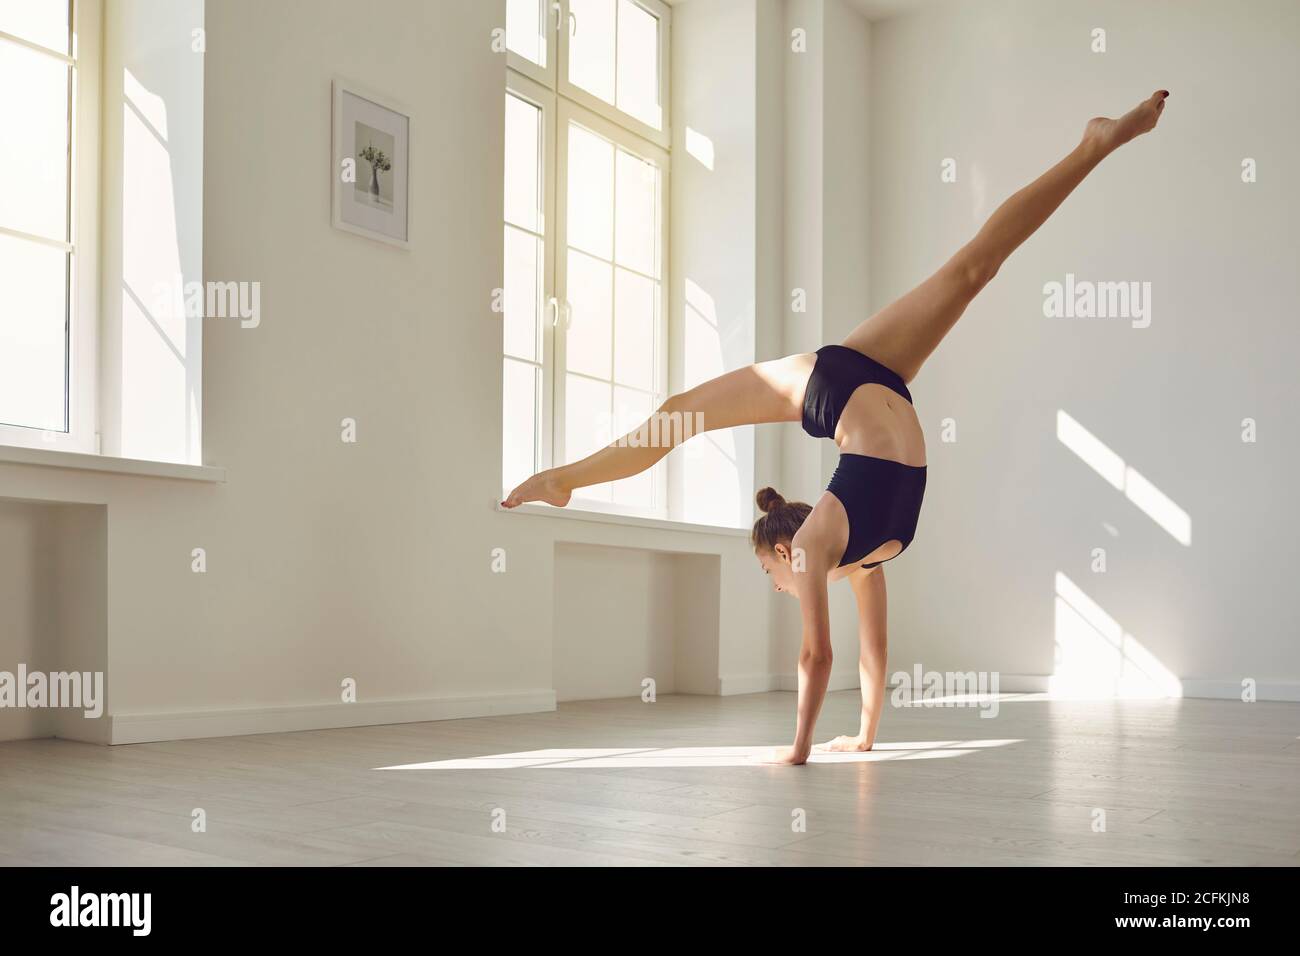 Gimnasia esbelta en sujetador deportivo top y shorts haciendo soporte de mano mientras practica gimnasia en el estudio Foto de stock